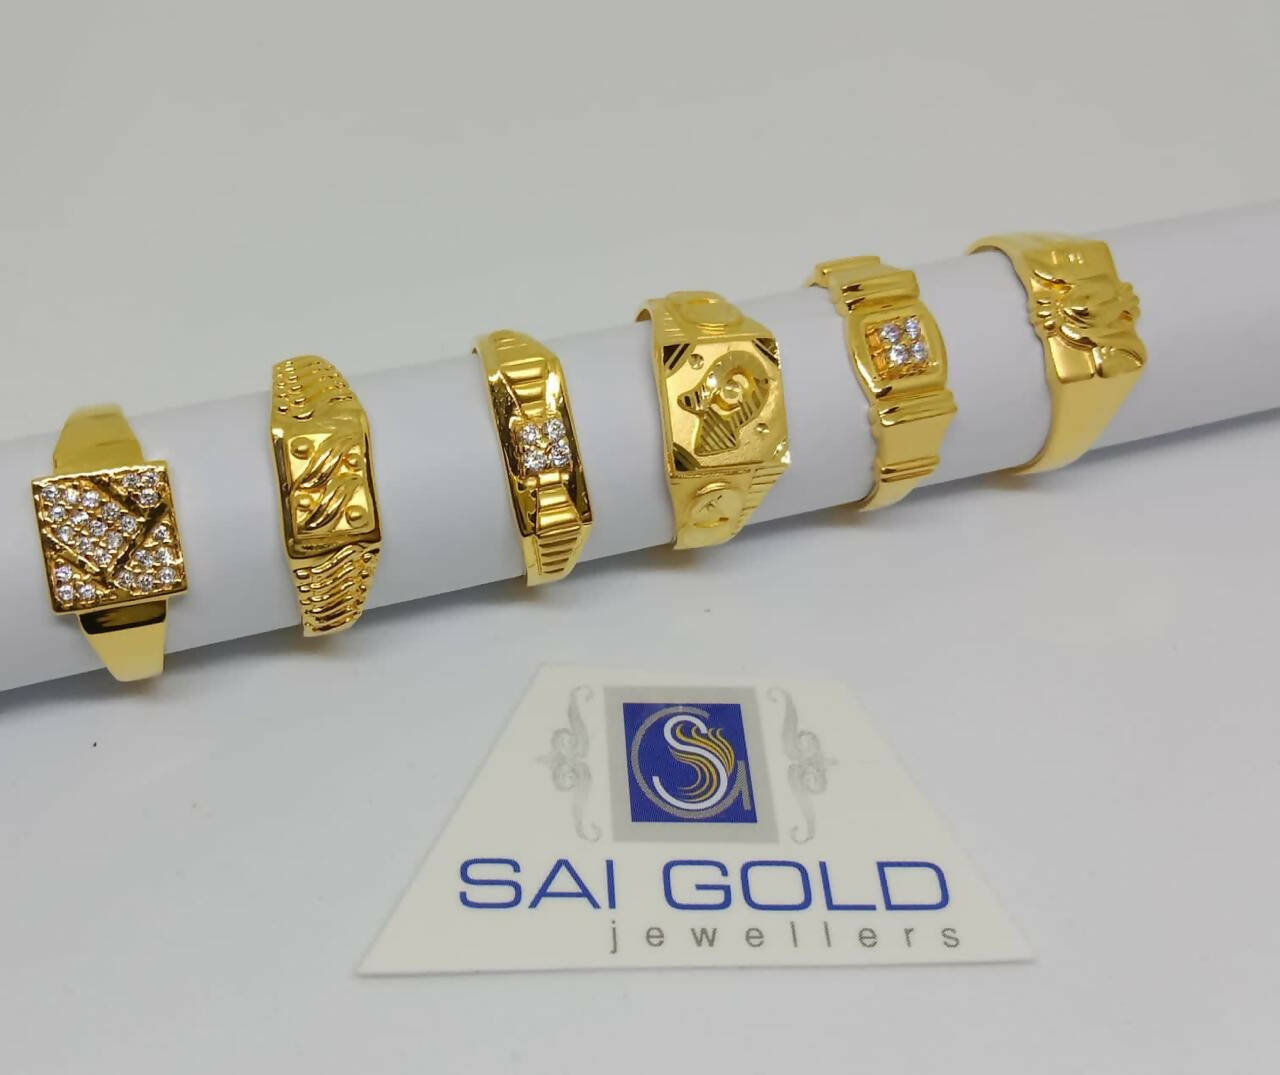 Best design of gold jens rings - YouTube